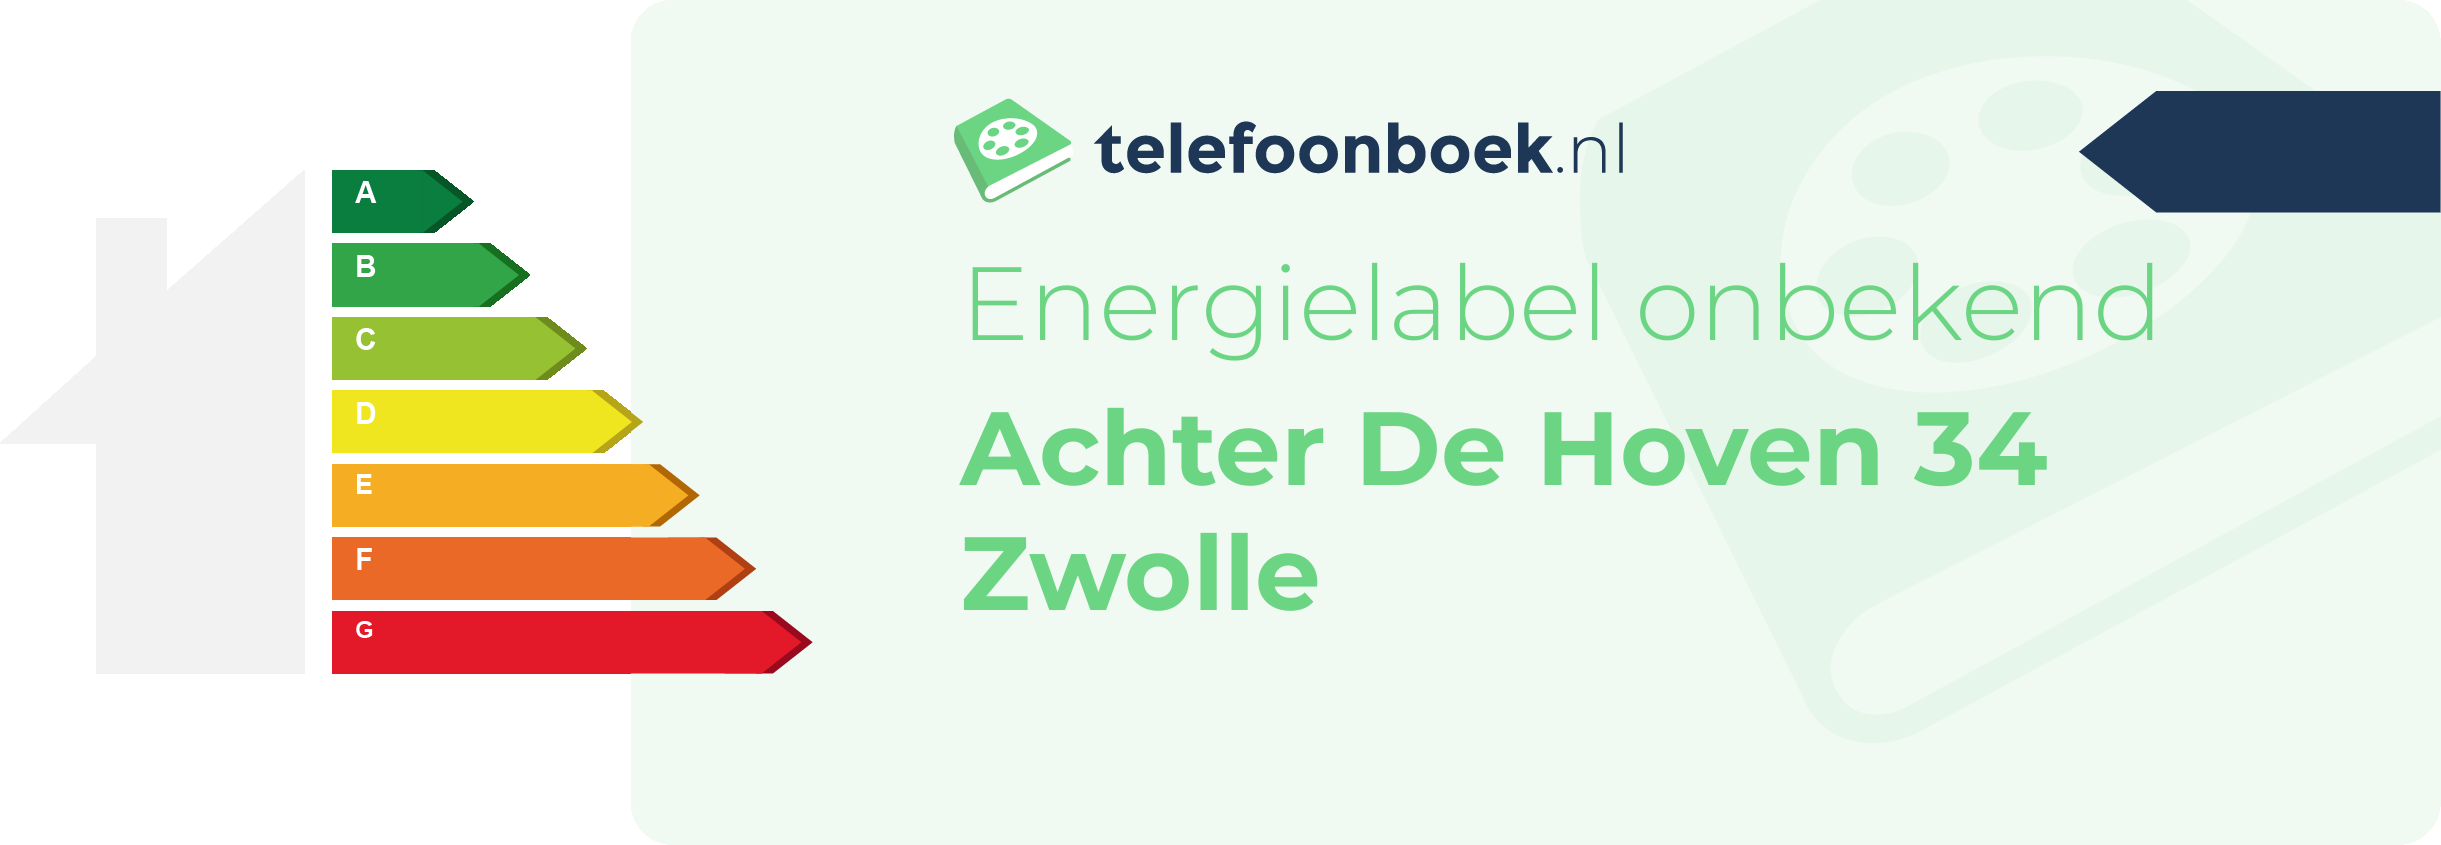 Energielabel Achter De Hoven 34 Zwolle